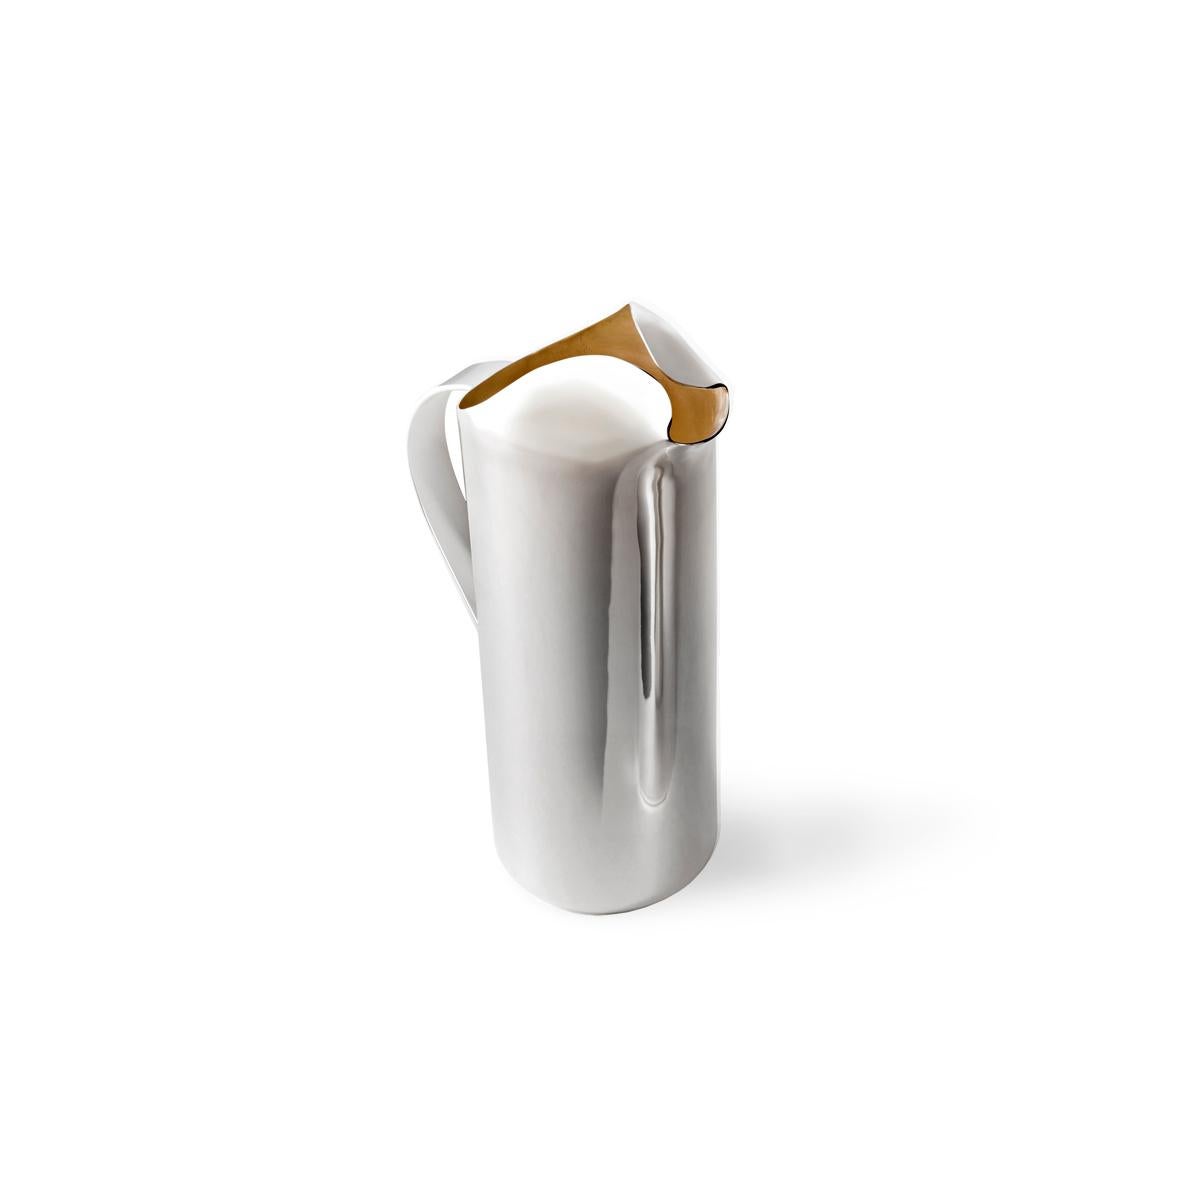 Foxy est un pichet en métal argenté, conçu par Aldo Cibic. La partie supérieure est caractérisée par un pli sinueux dans le métal. Ce détail n'est pas seulement esthétique, c'est une solution fonctionnelle qui permet de créer un bec qui empêche les